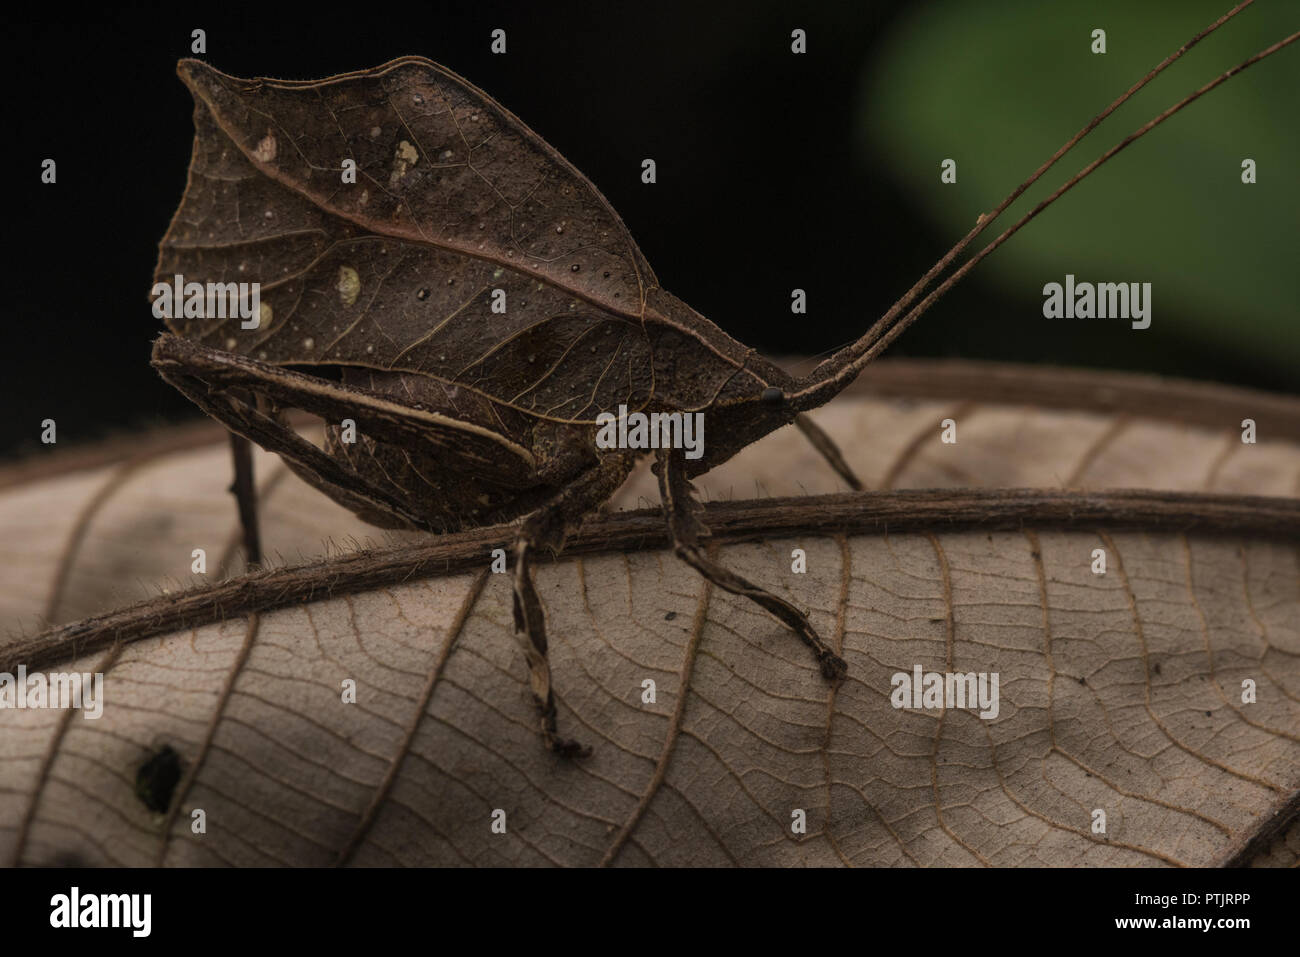 Eine katydid ahmt ein totes Blatt in den Dschungel, um vor Feinden versteckt zu bleiben. Stockfoto